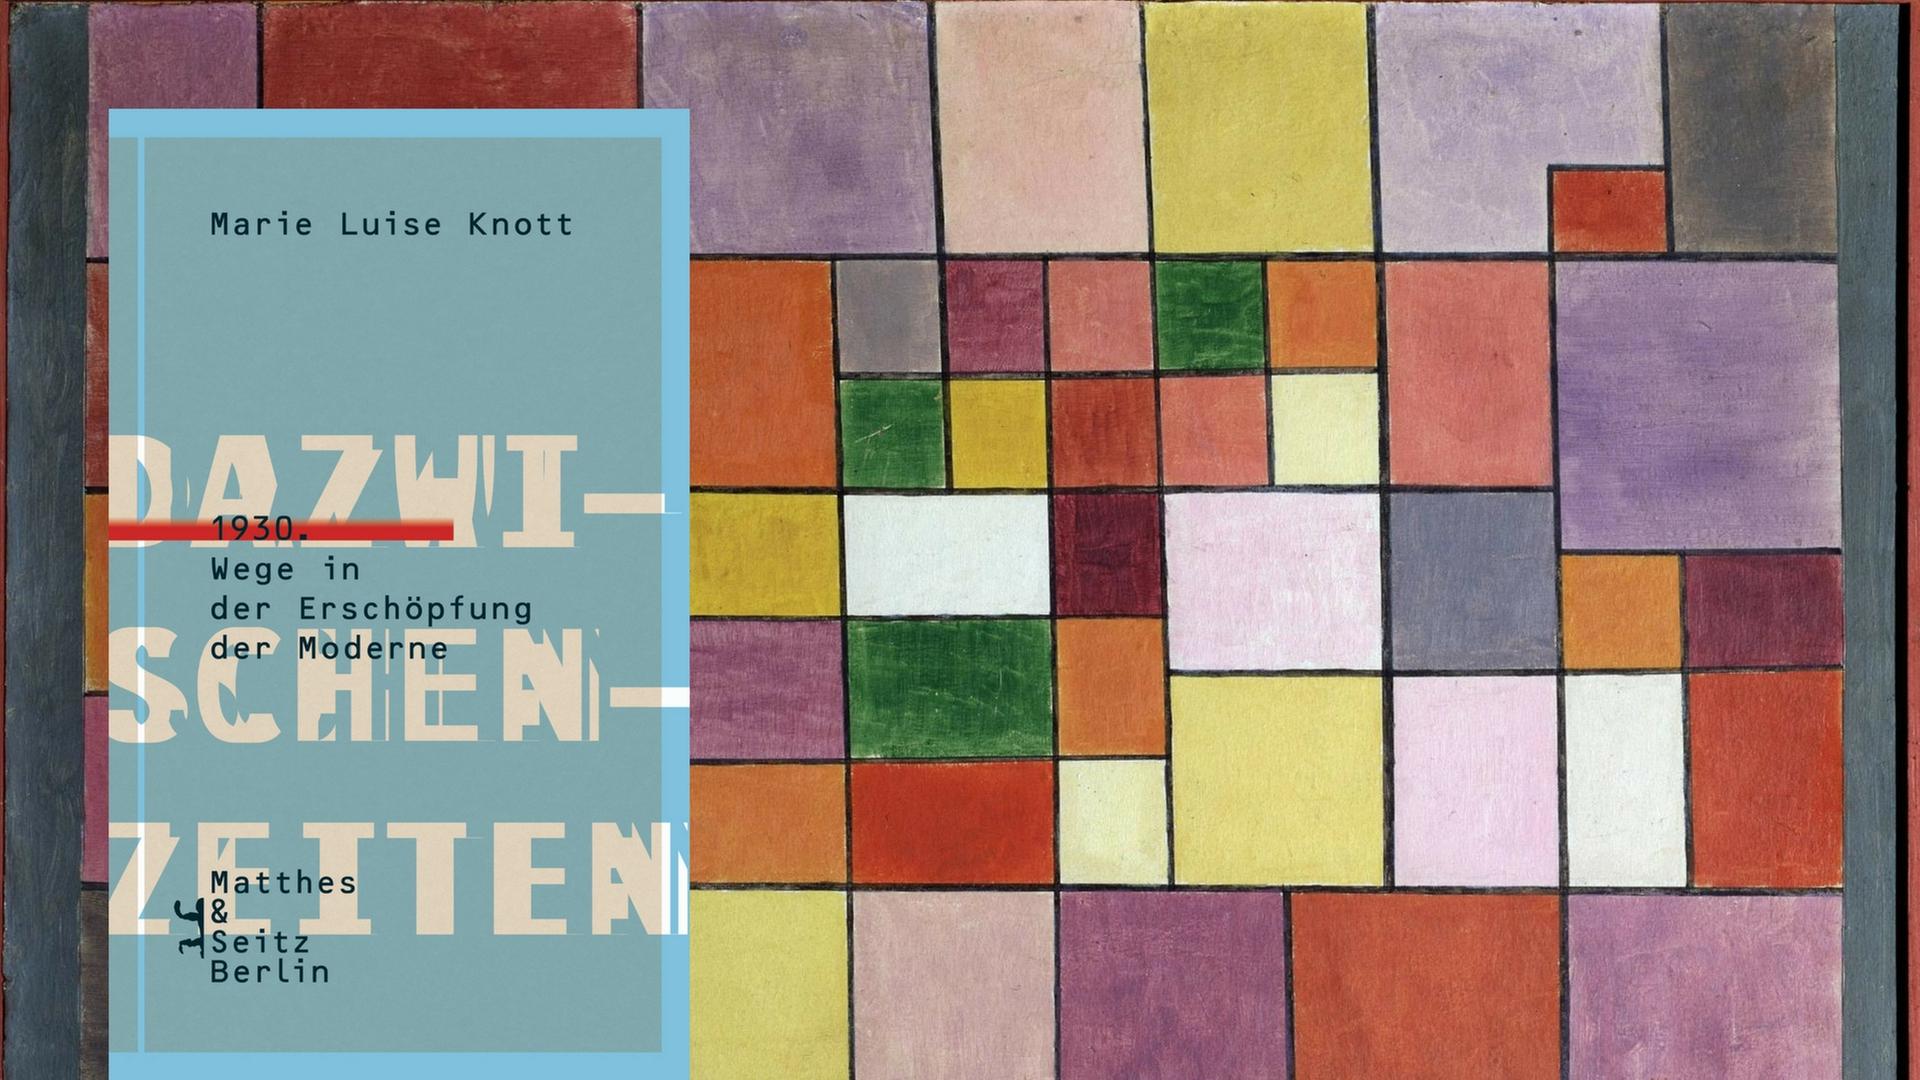 Buchcover: Marie Luise Knott: "Dazwischenzeiten"